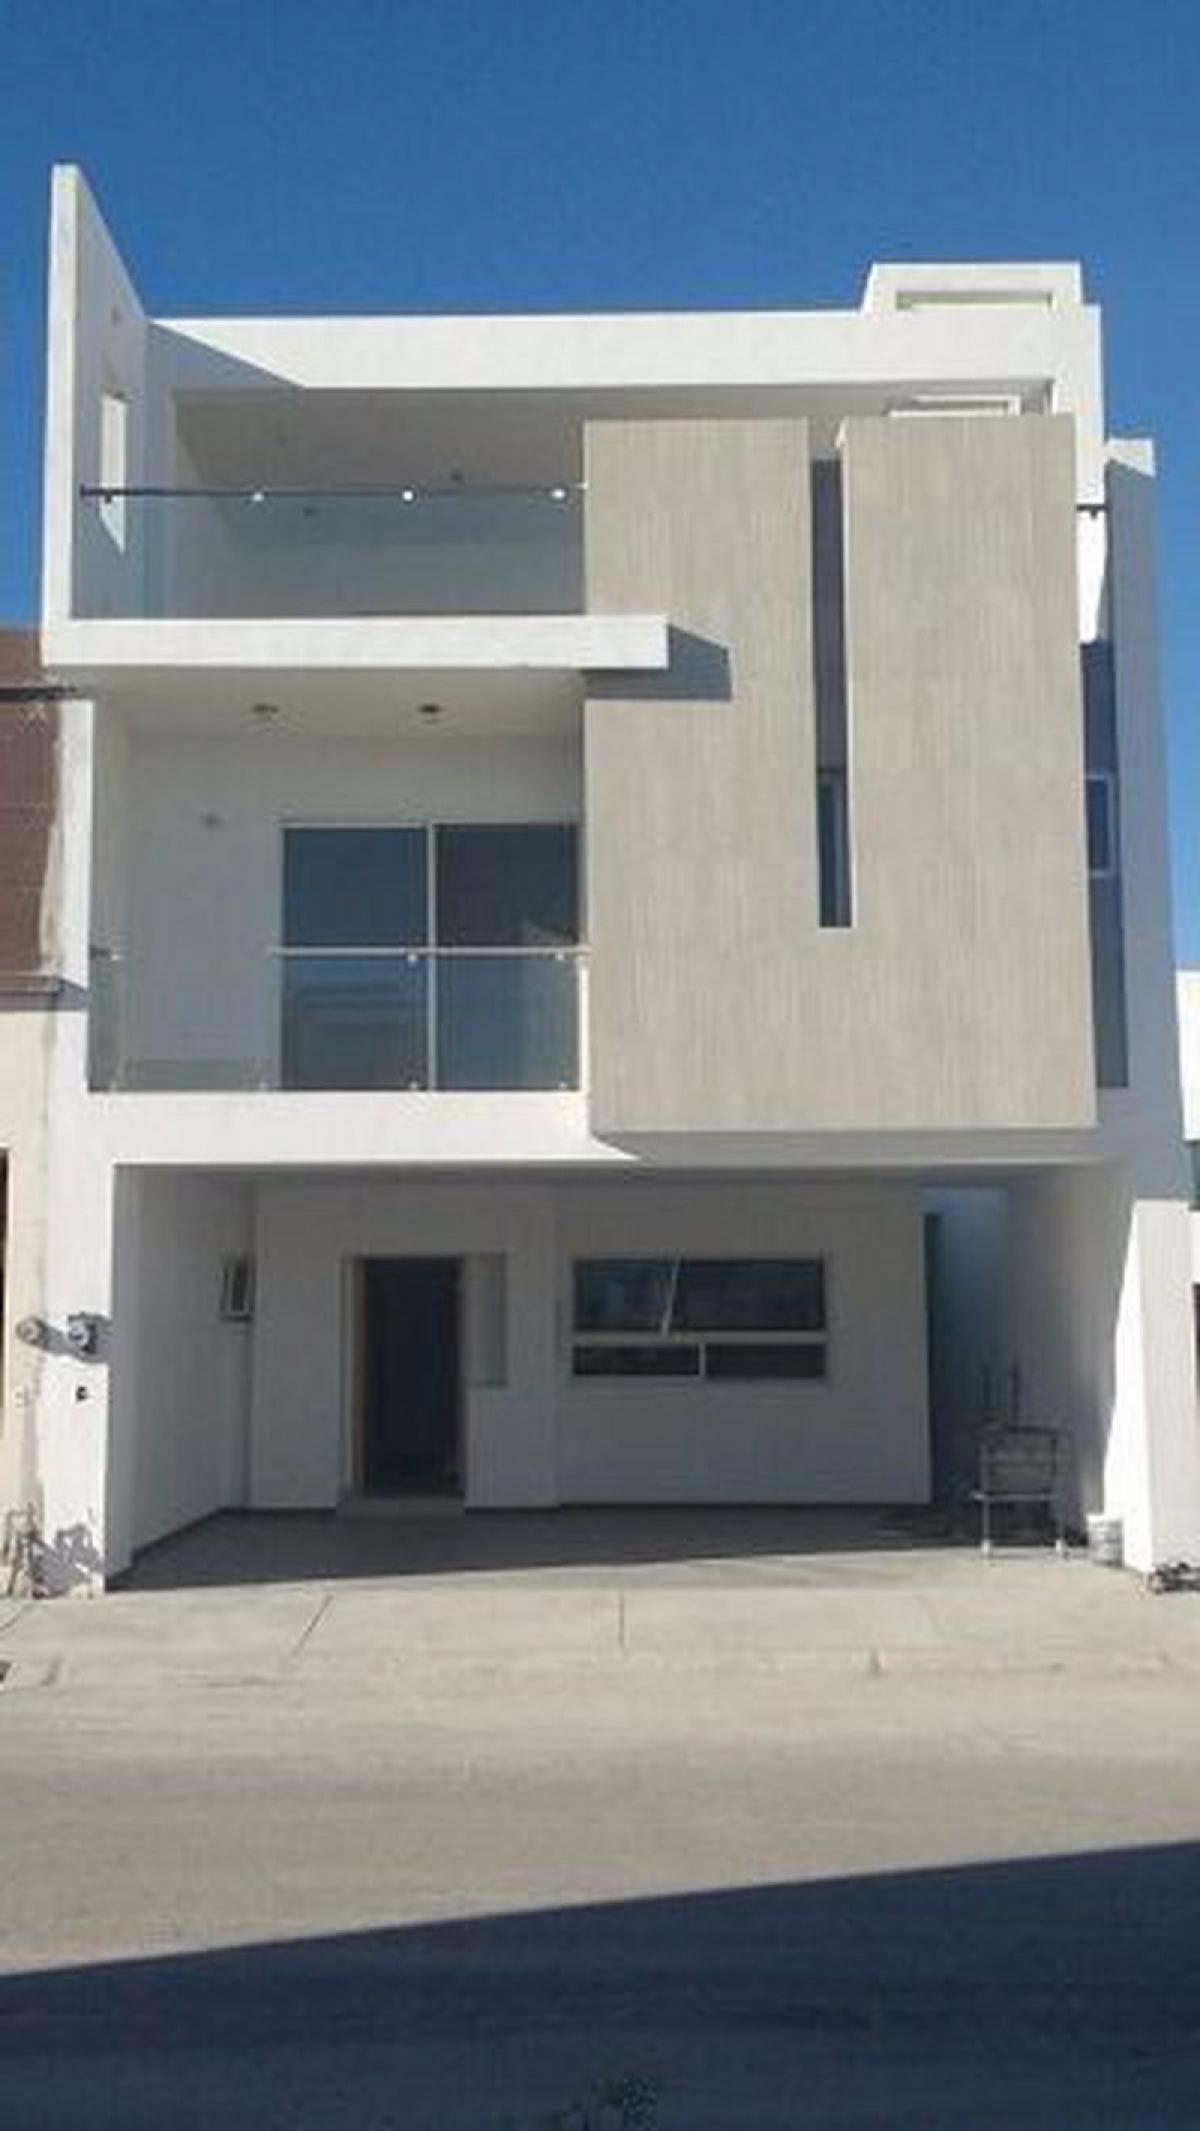 Picture of Home For Sale in Montemorelos, Nuevo Leon, Mexico